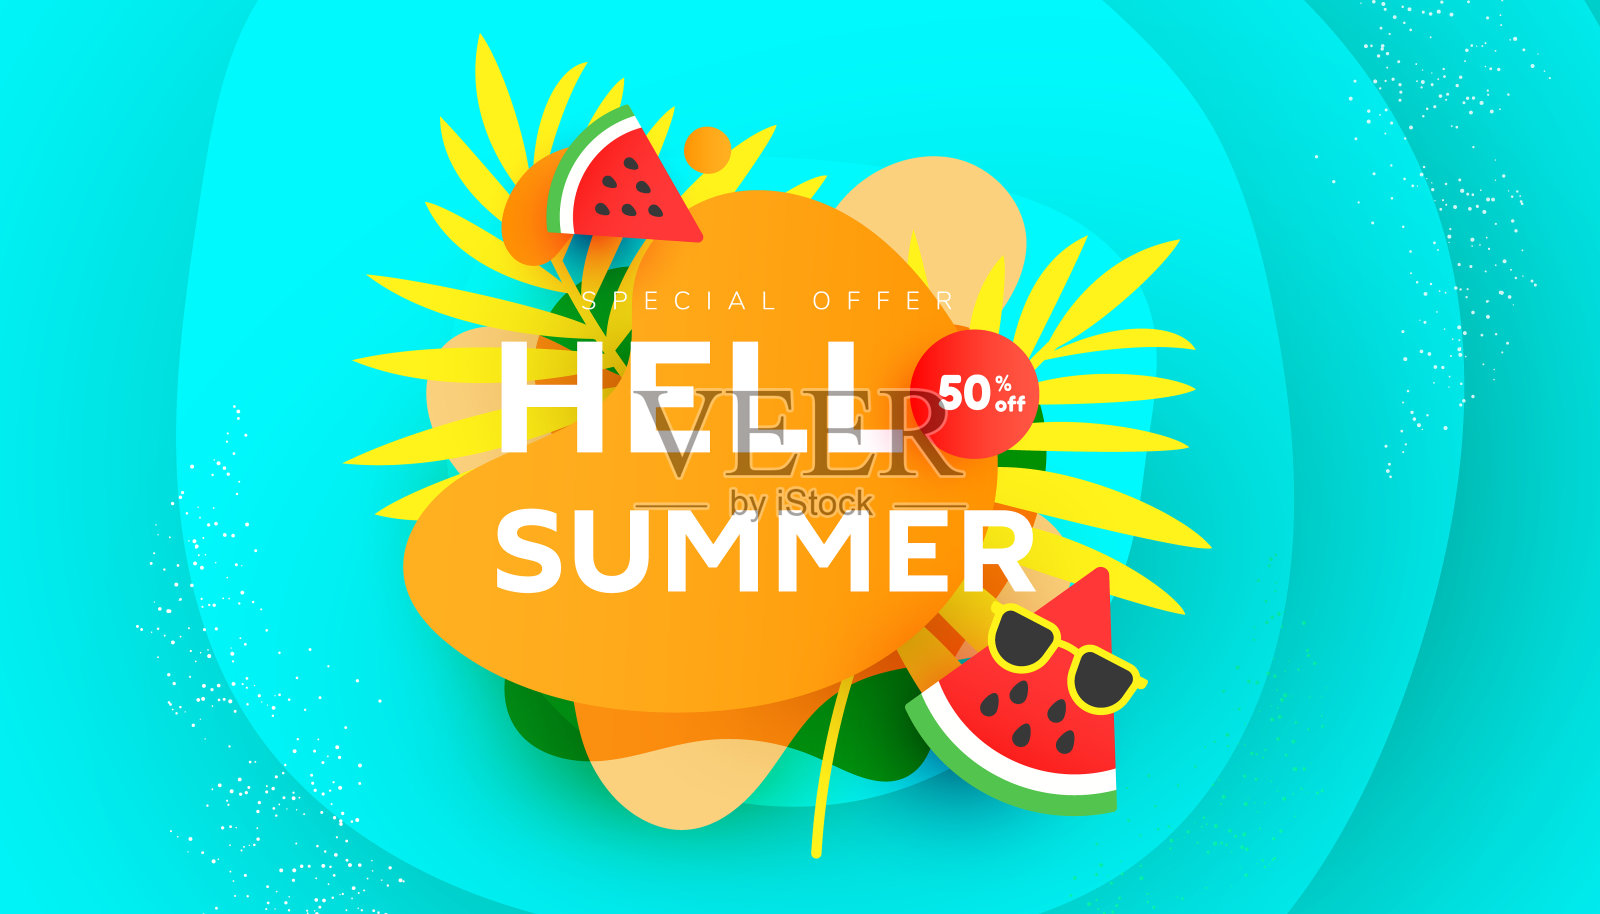 明亮的夏季50%折扣横幅与热带树叶和泡沫形状的彩色背景与地方的广告文本设计模板素材